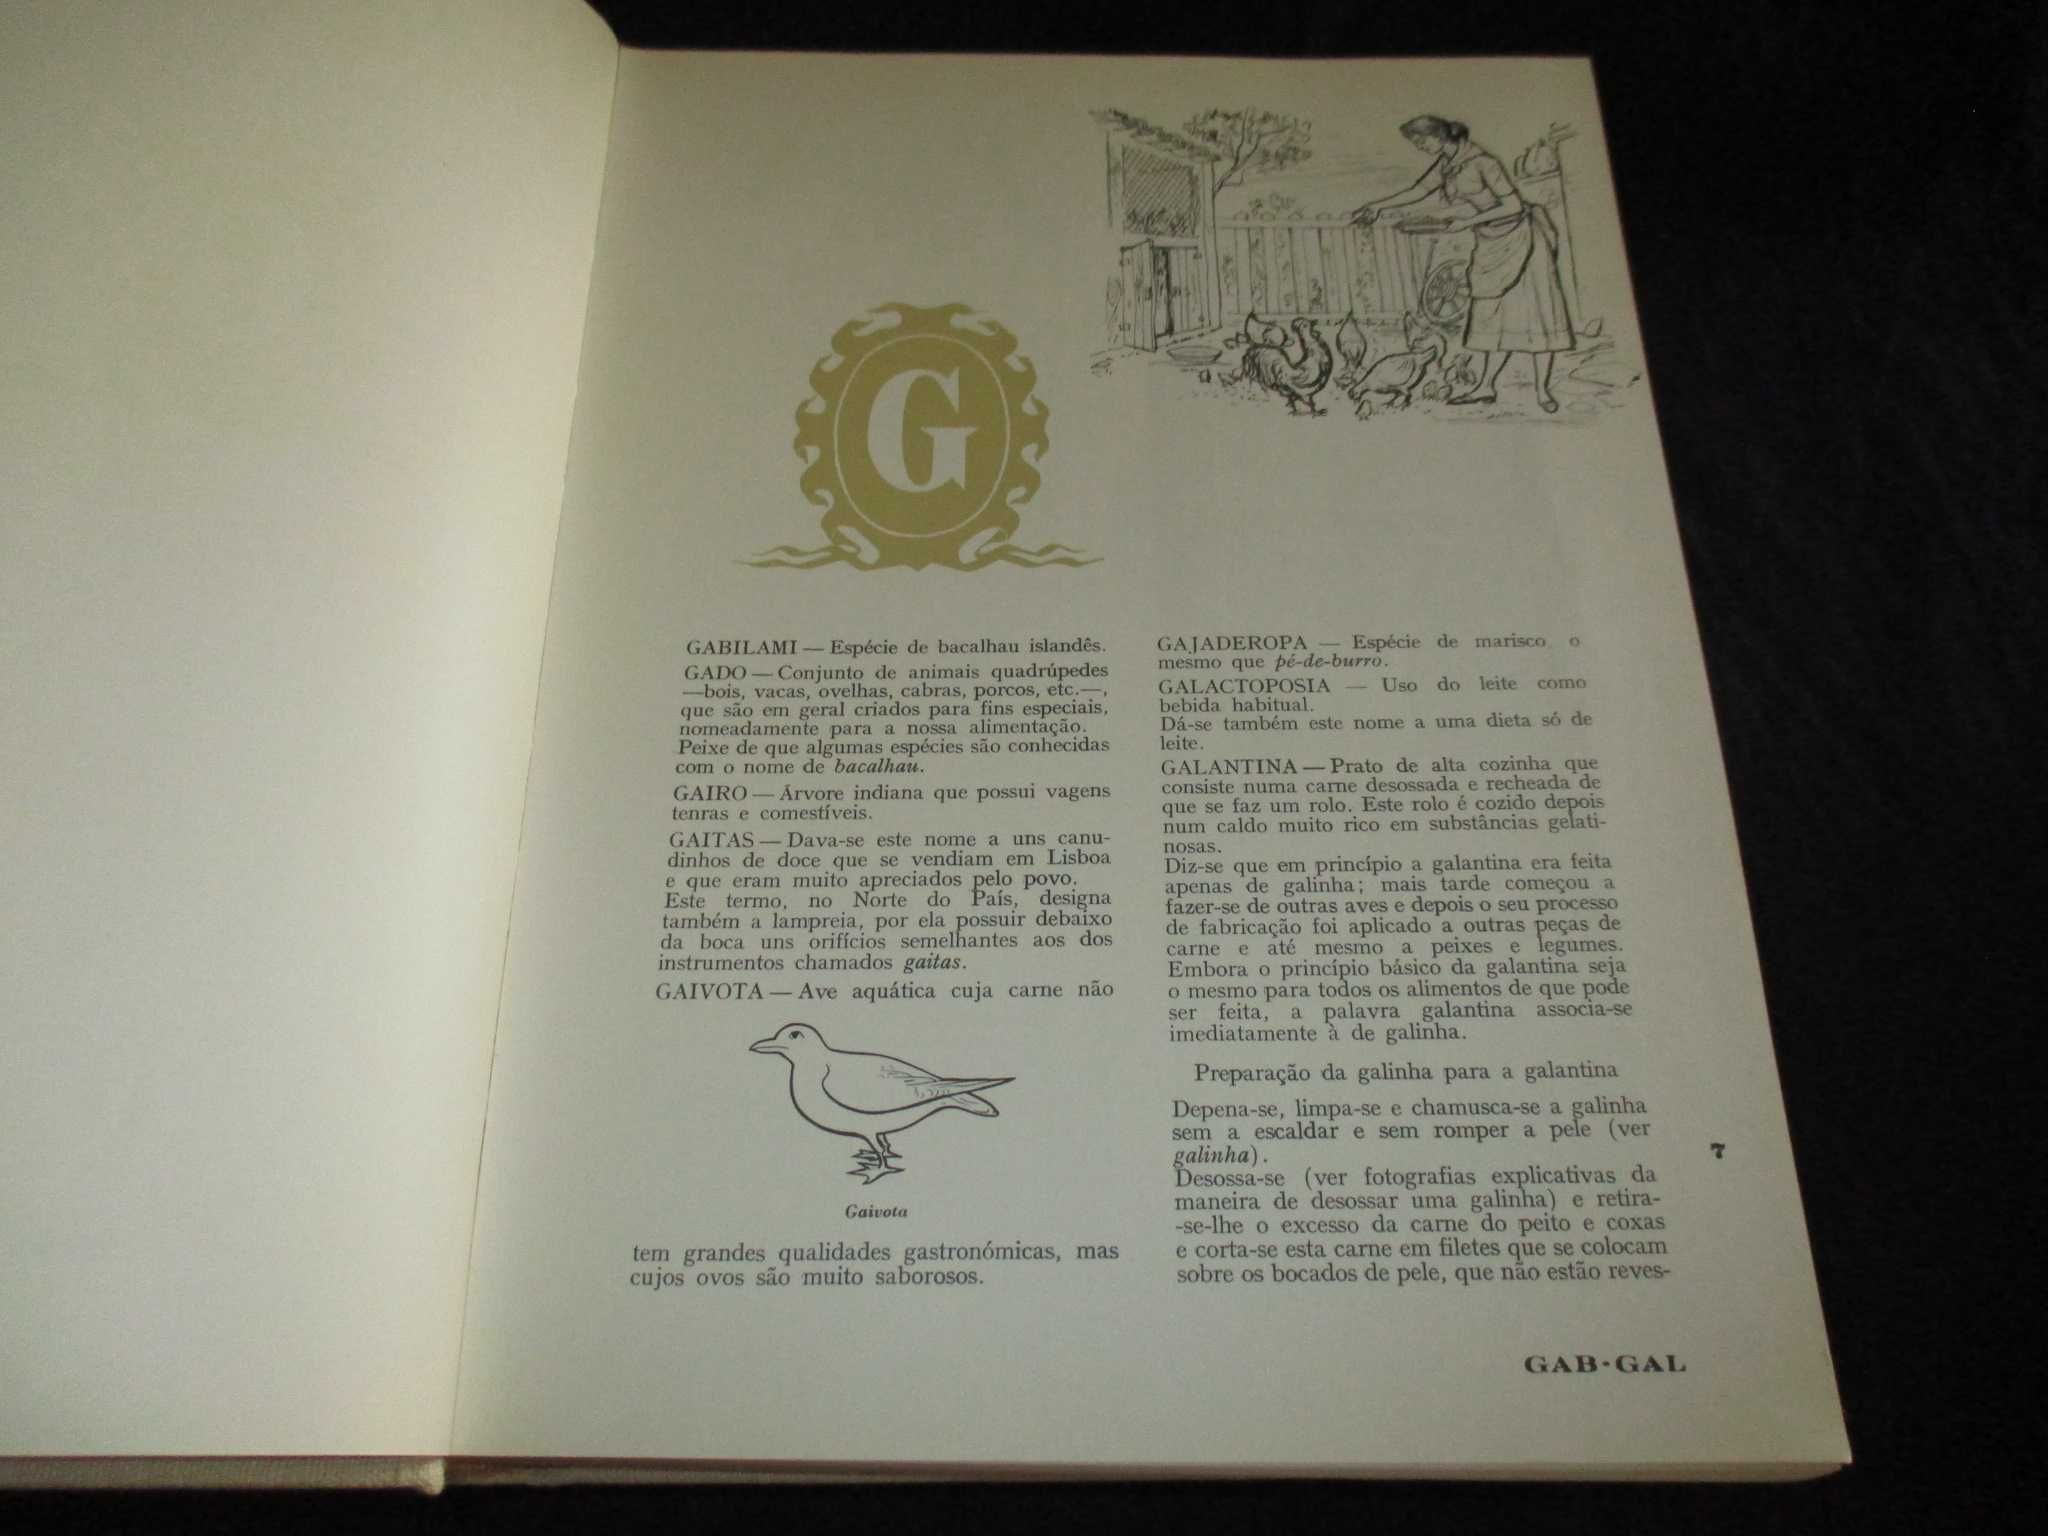 Livros Grande Enciclopédia da Cozinha Maria de Lourdes Modesto